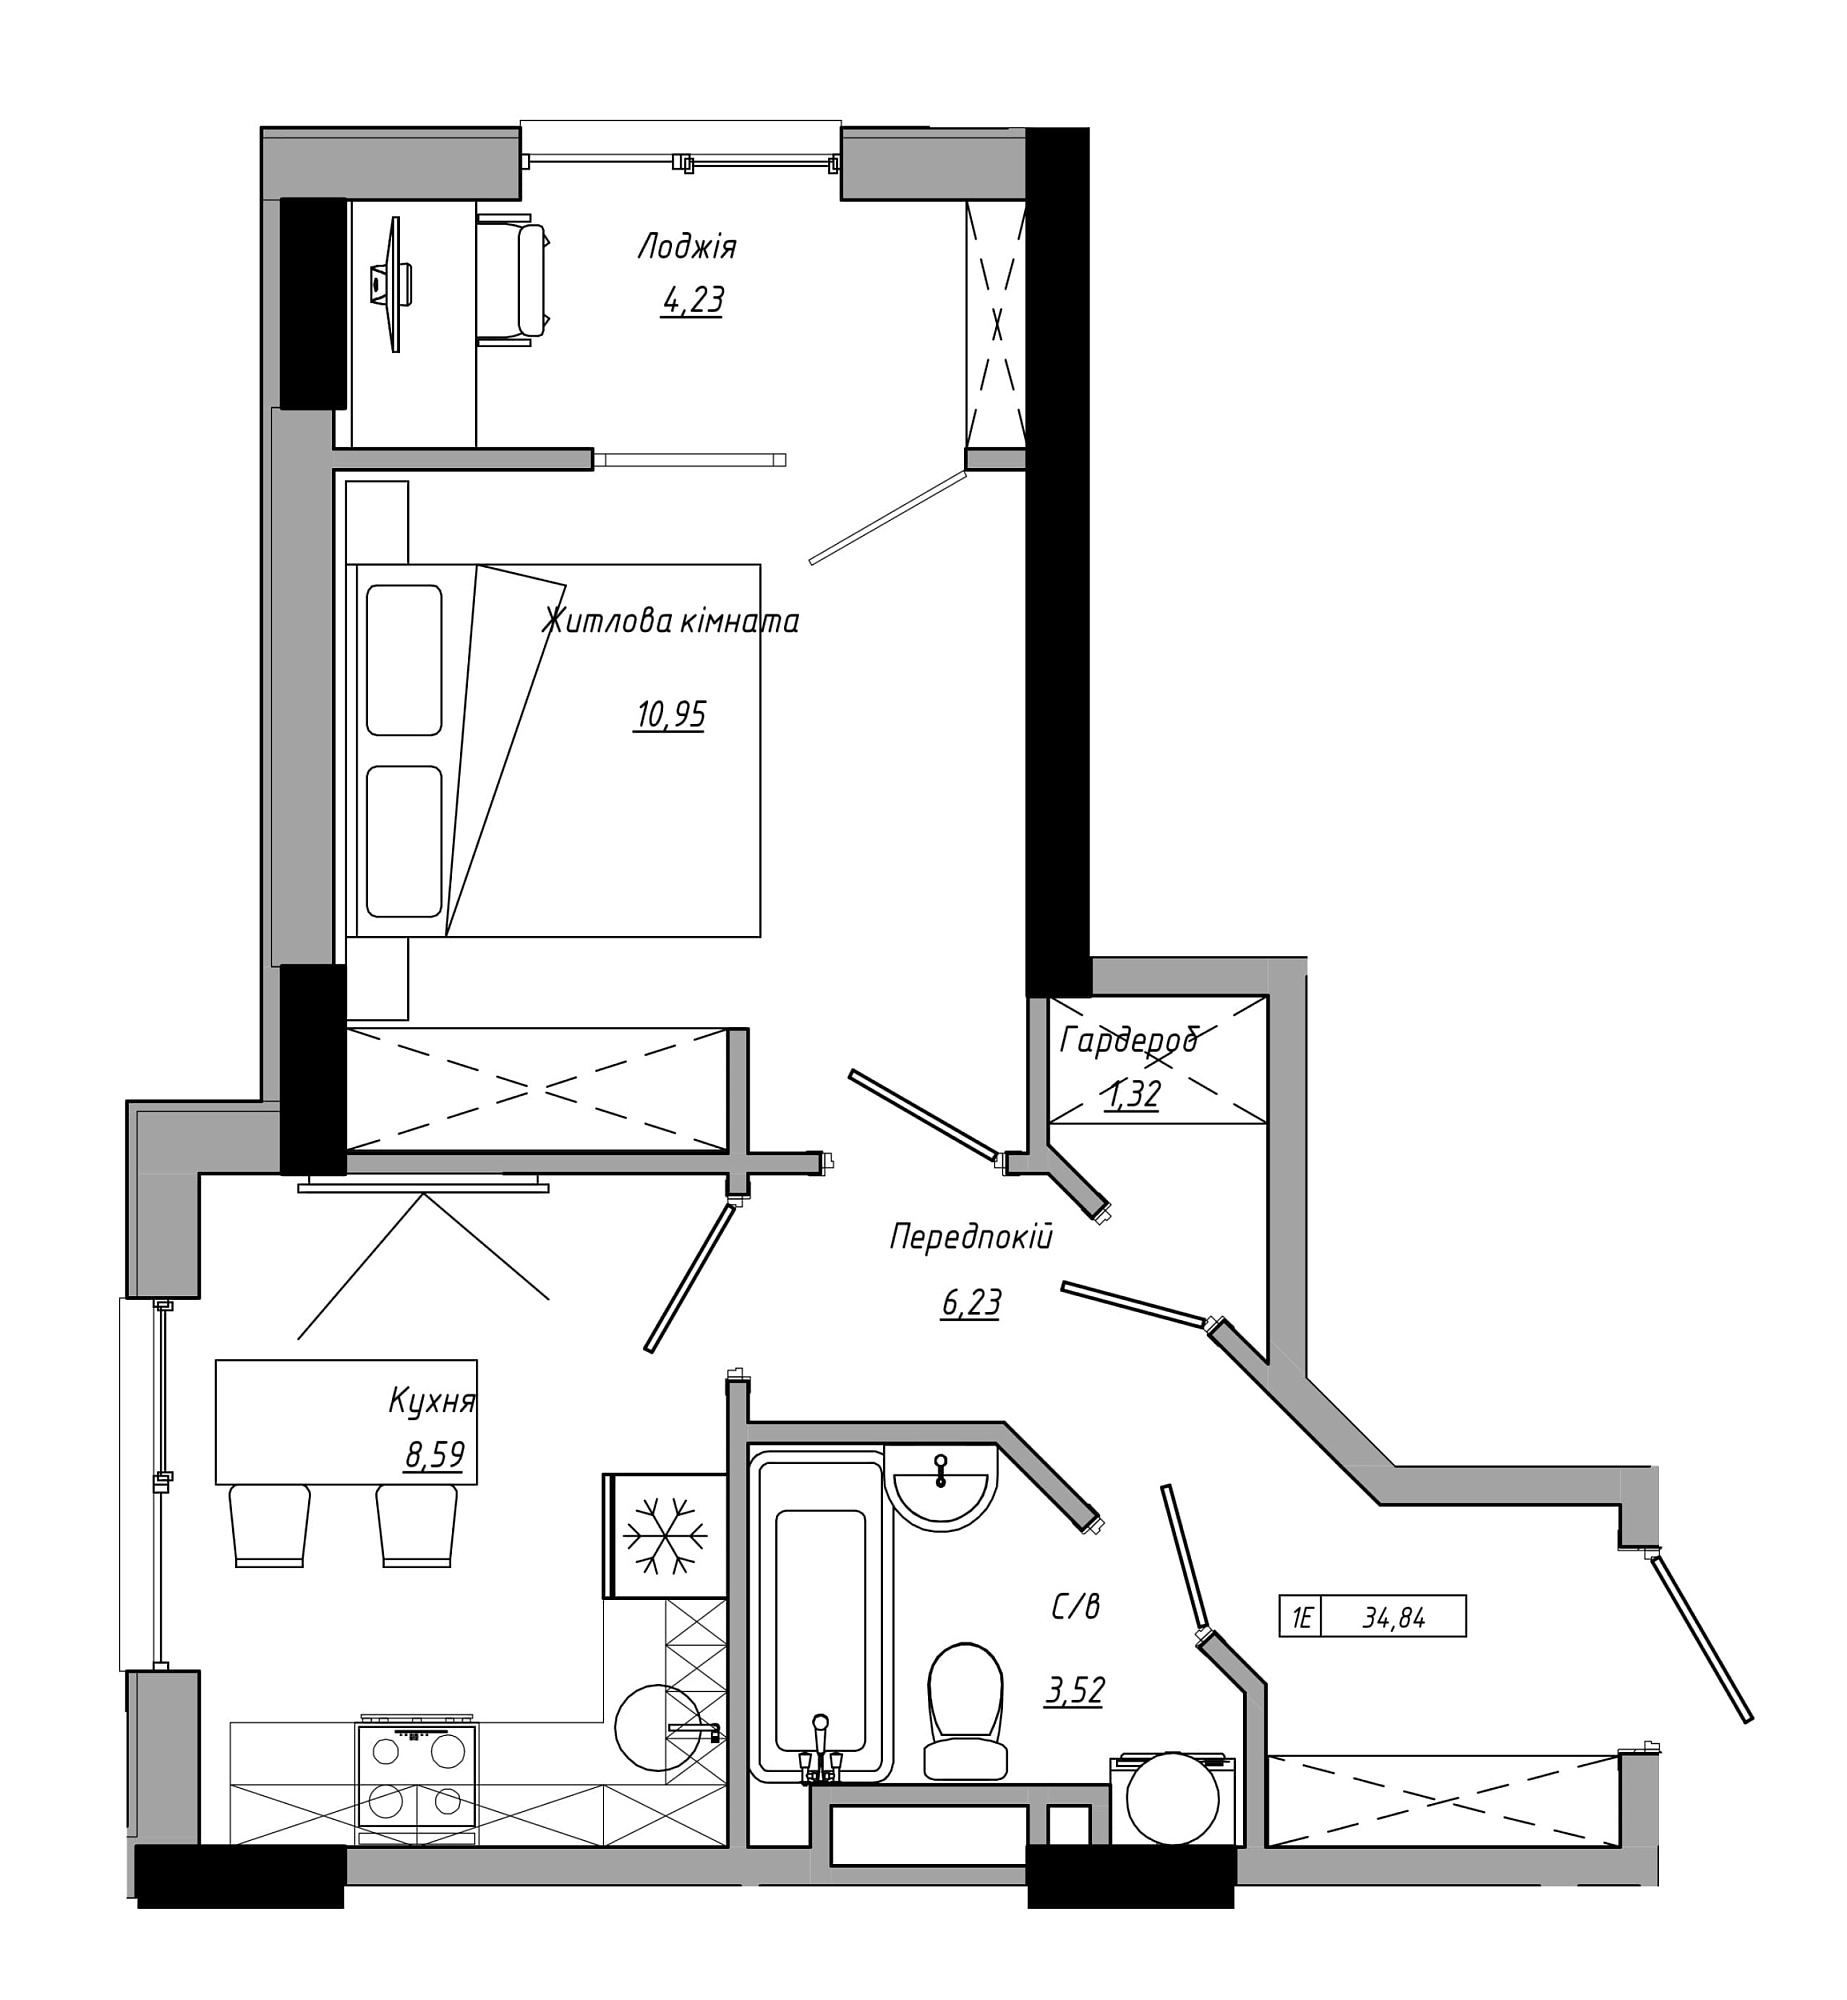 Планування 1-к квартира площею 34.84м2, AB-21-06/00009.